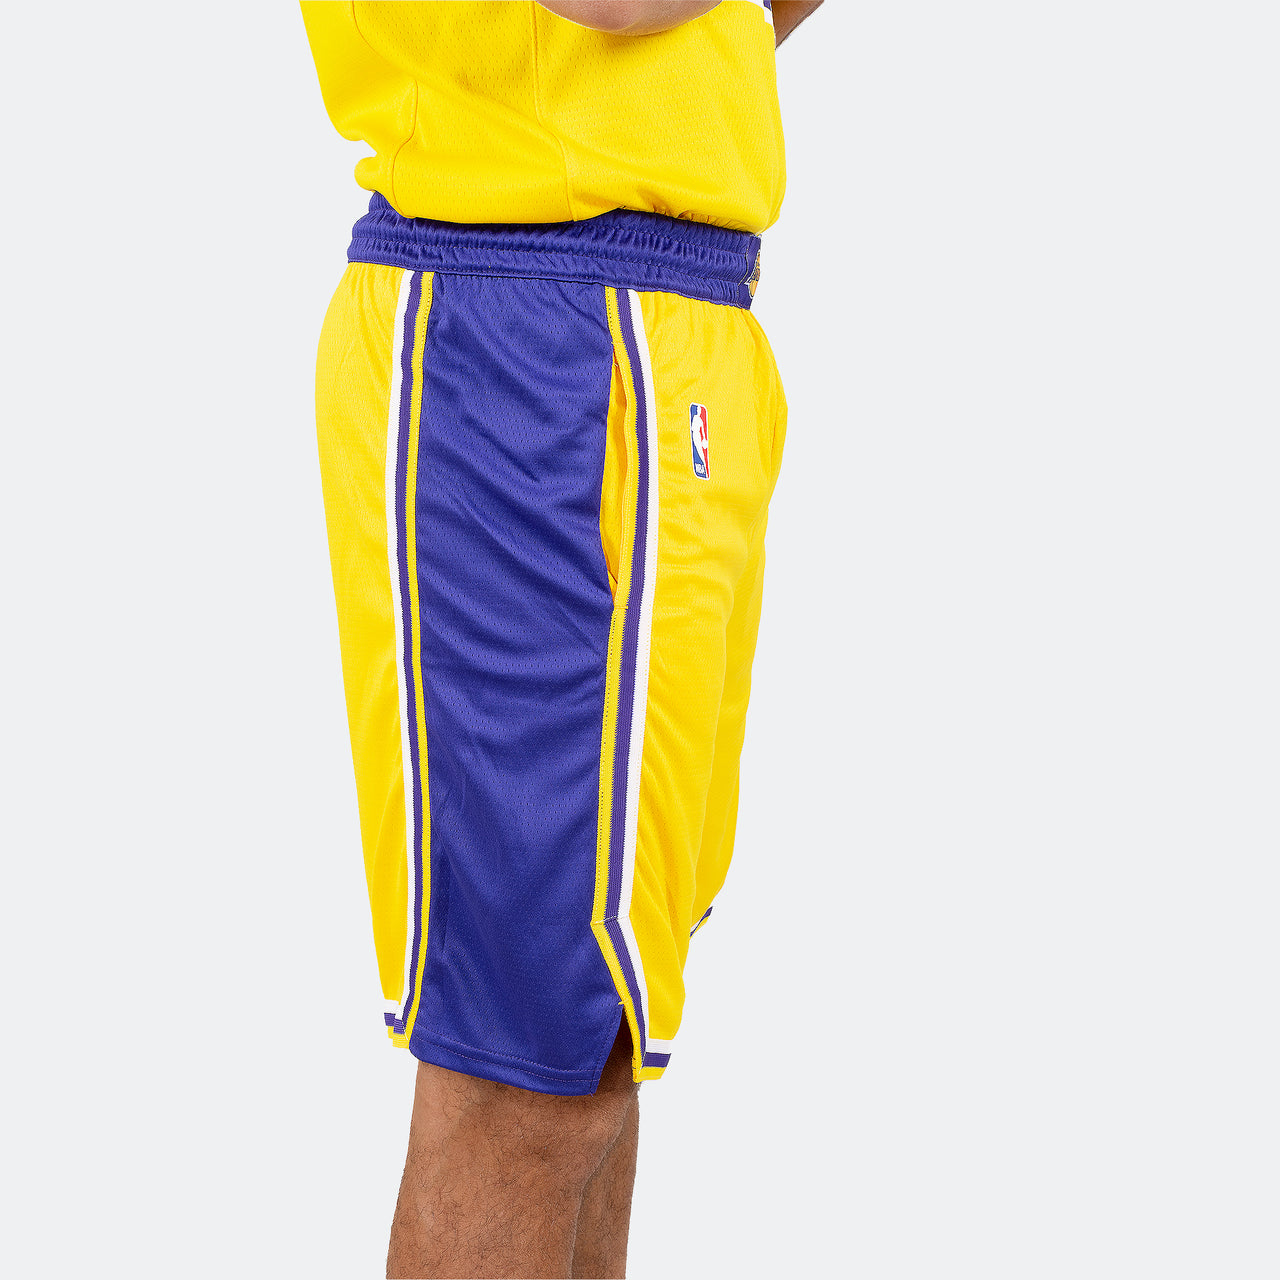 Gelbe Herren-Shorts der Los Angeles Lakers